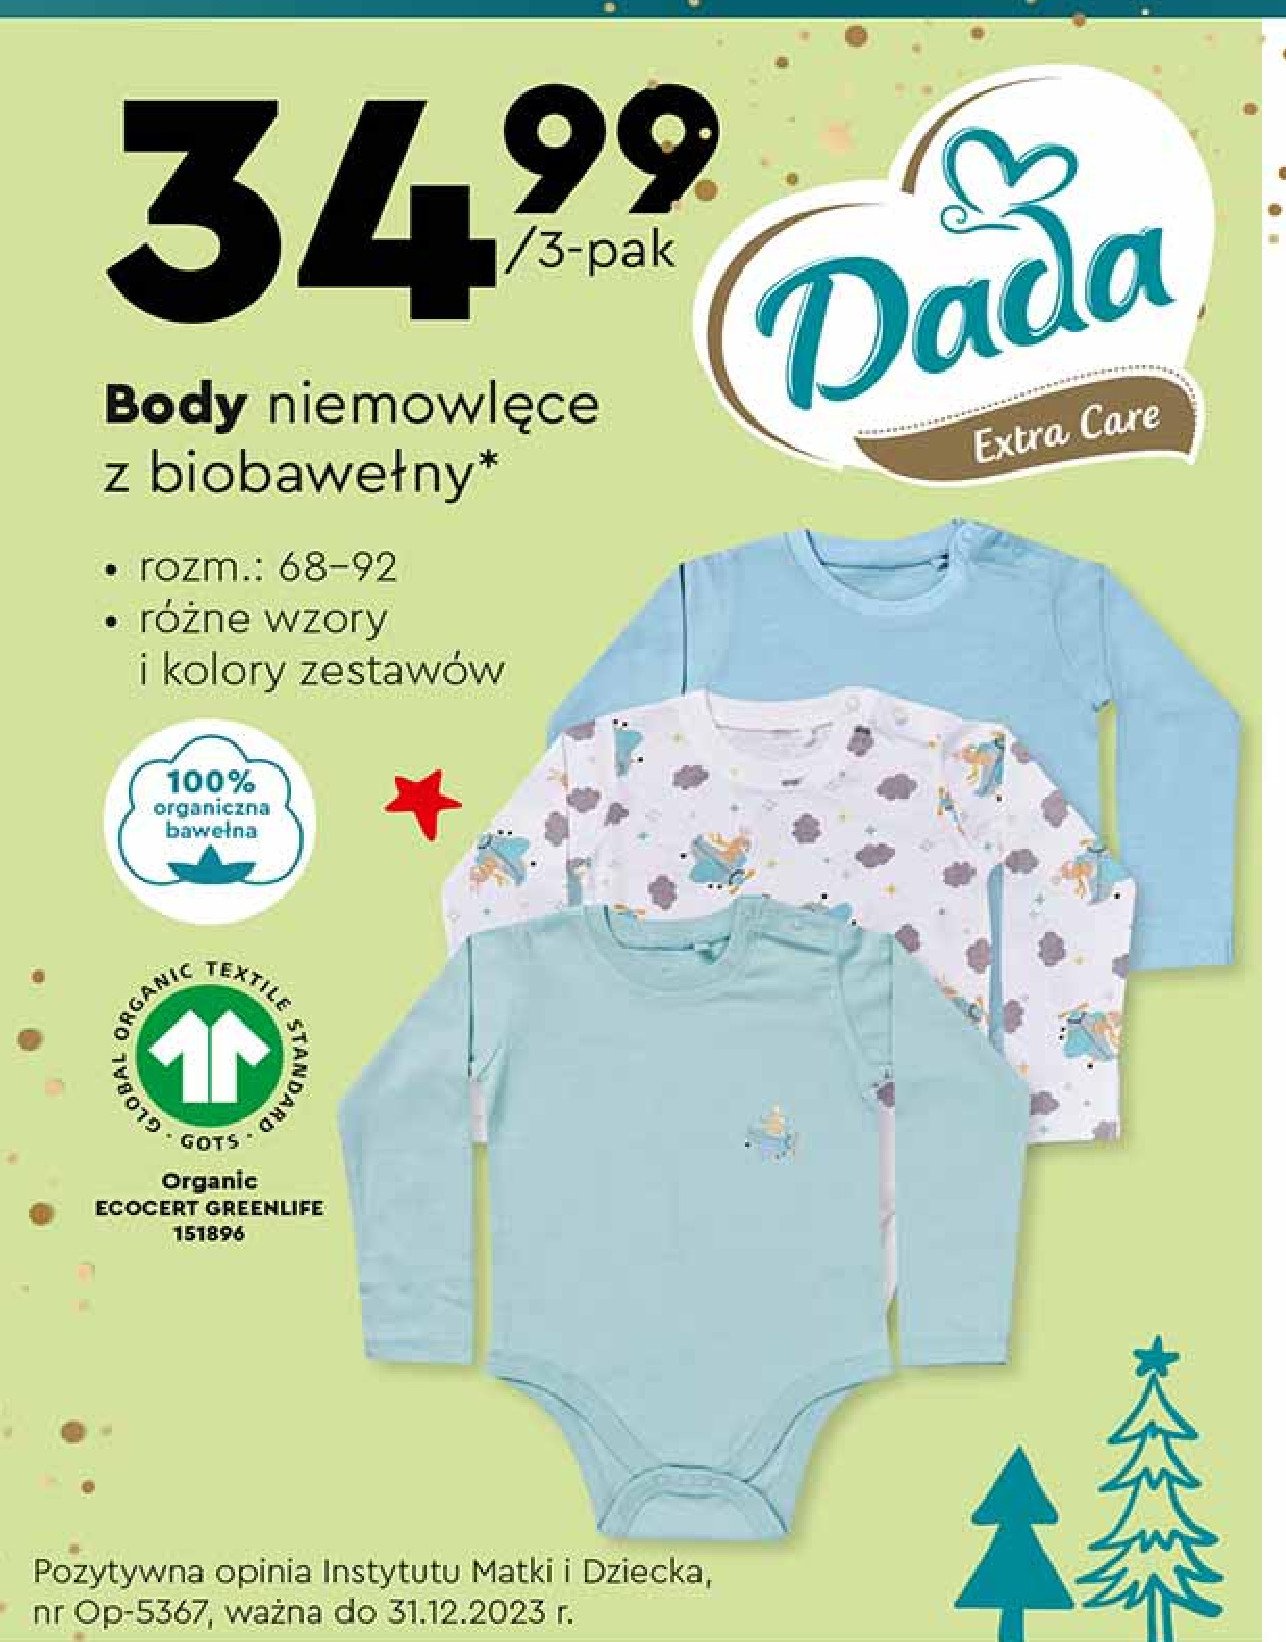 Body niemowlęce 68-92 Dada extra care promocja